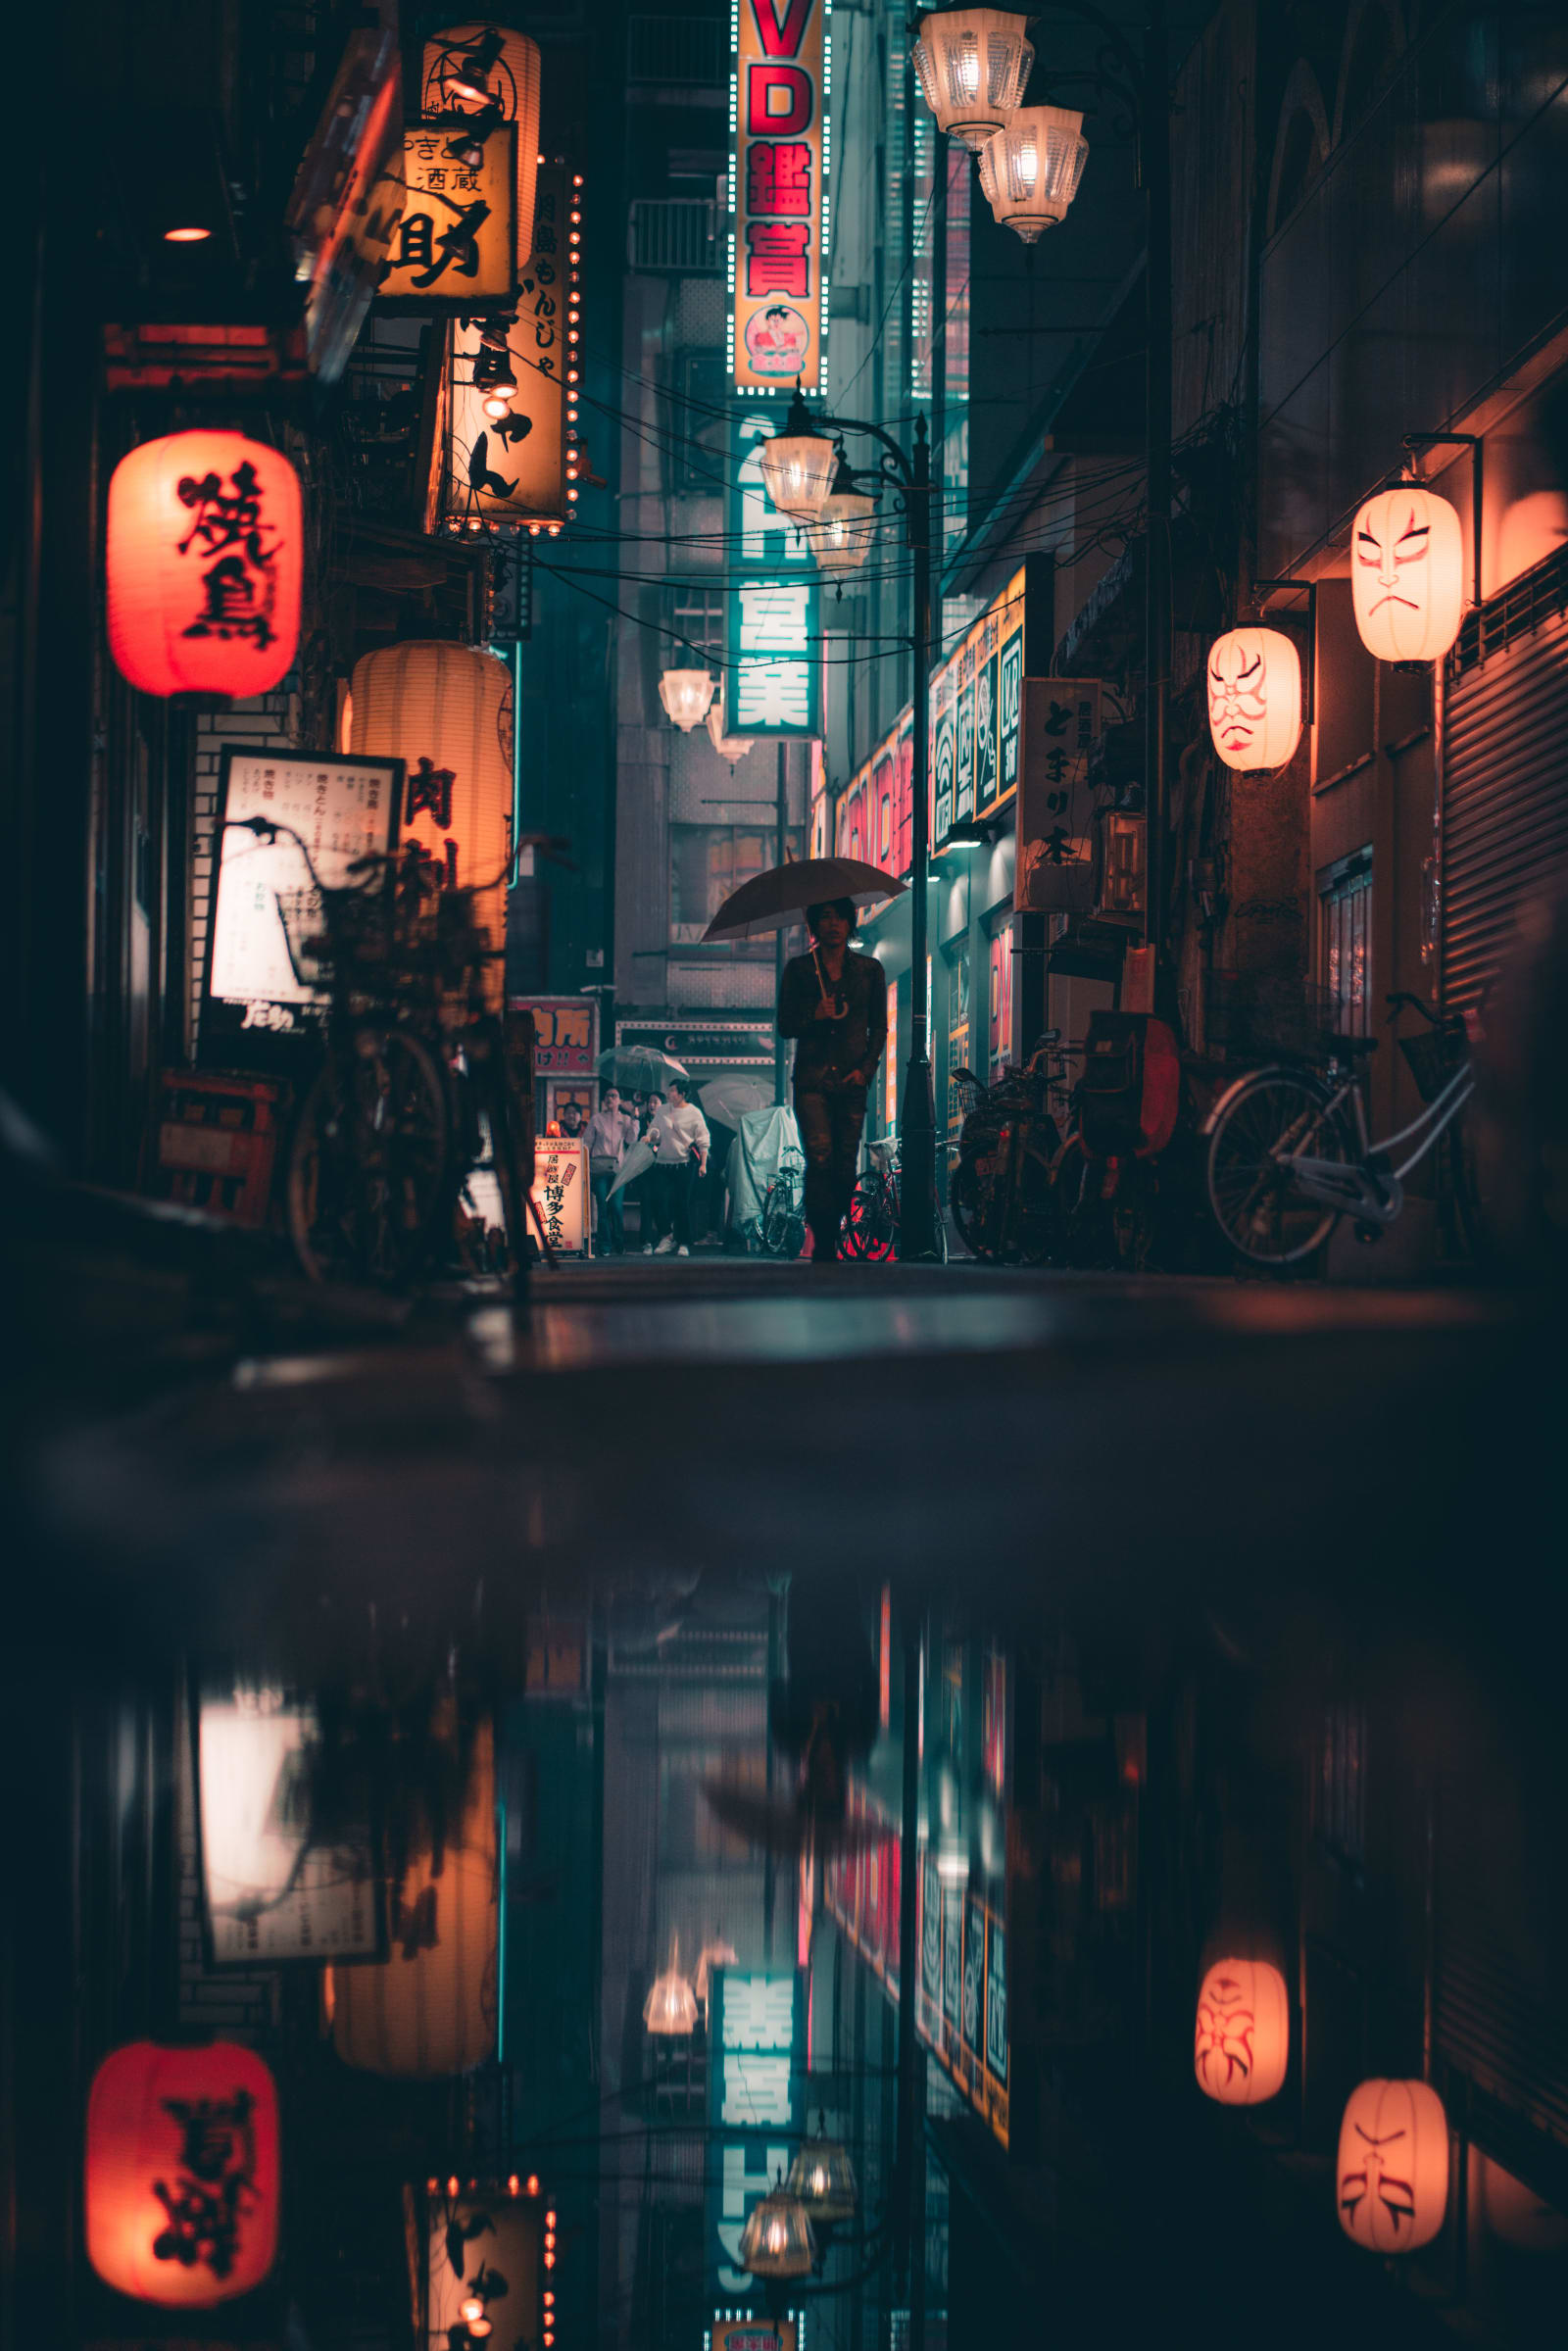 Shinjuki_Jude_Allen_Photography.jpeg